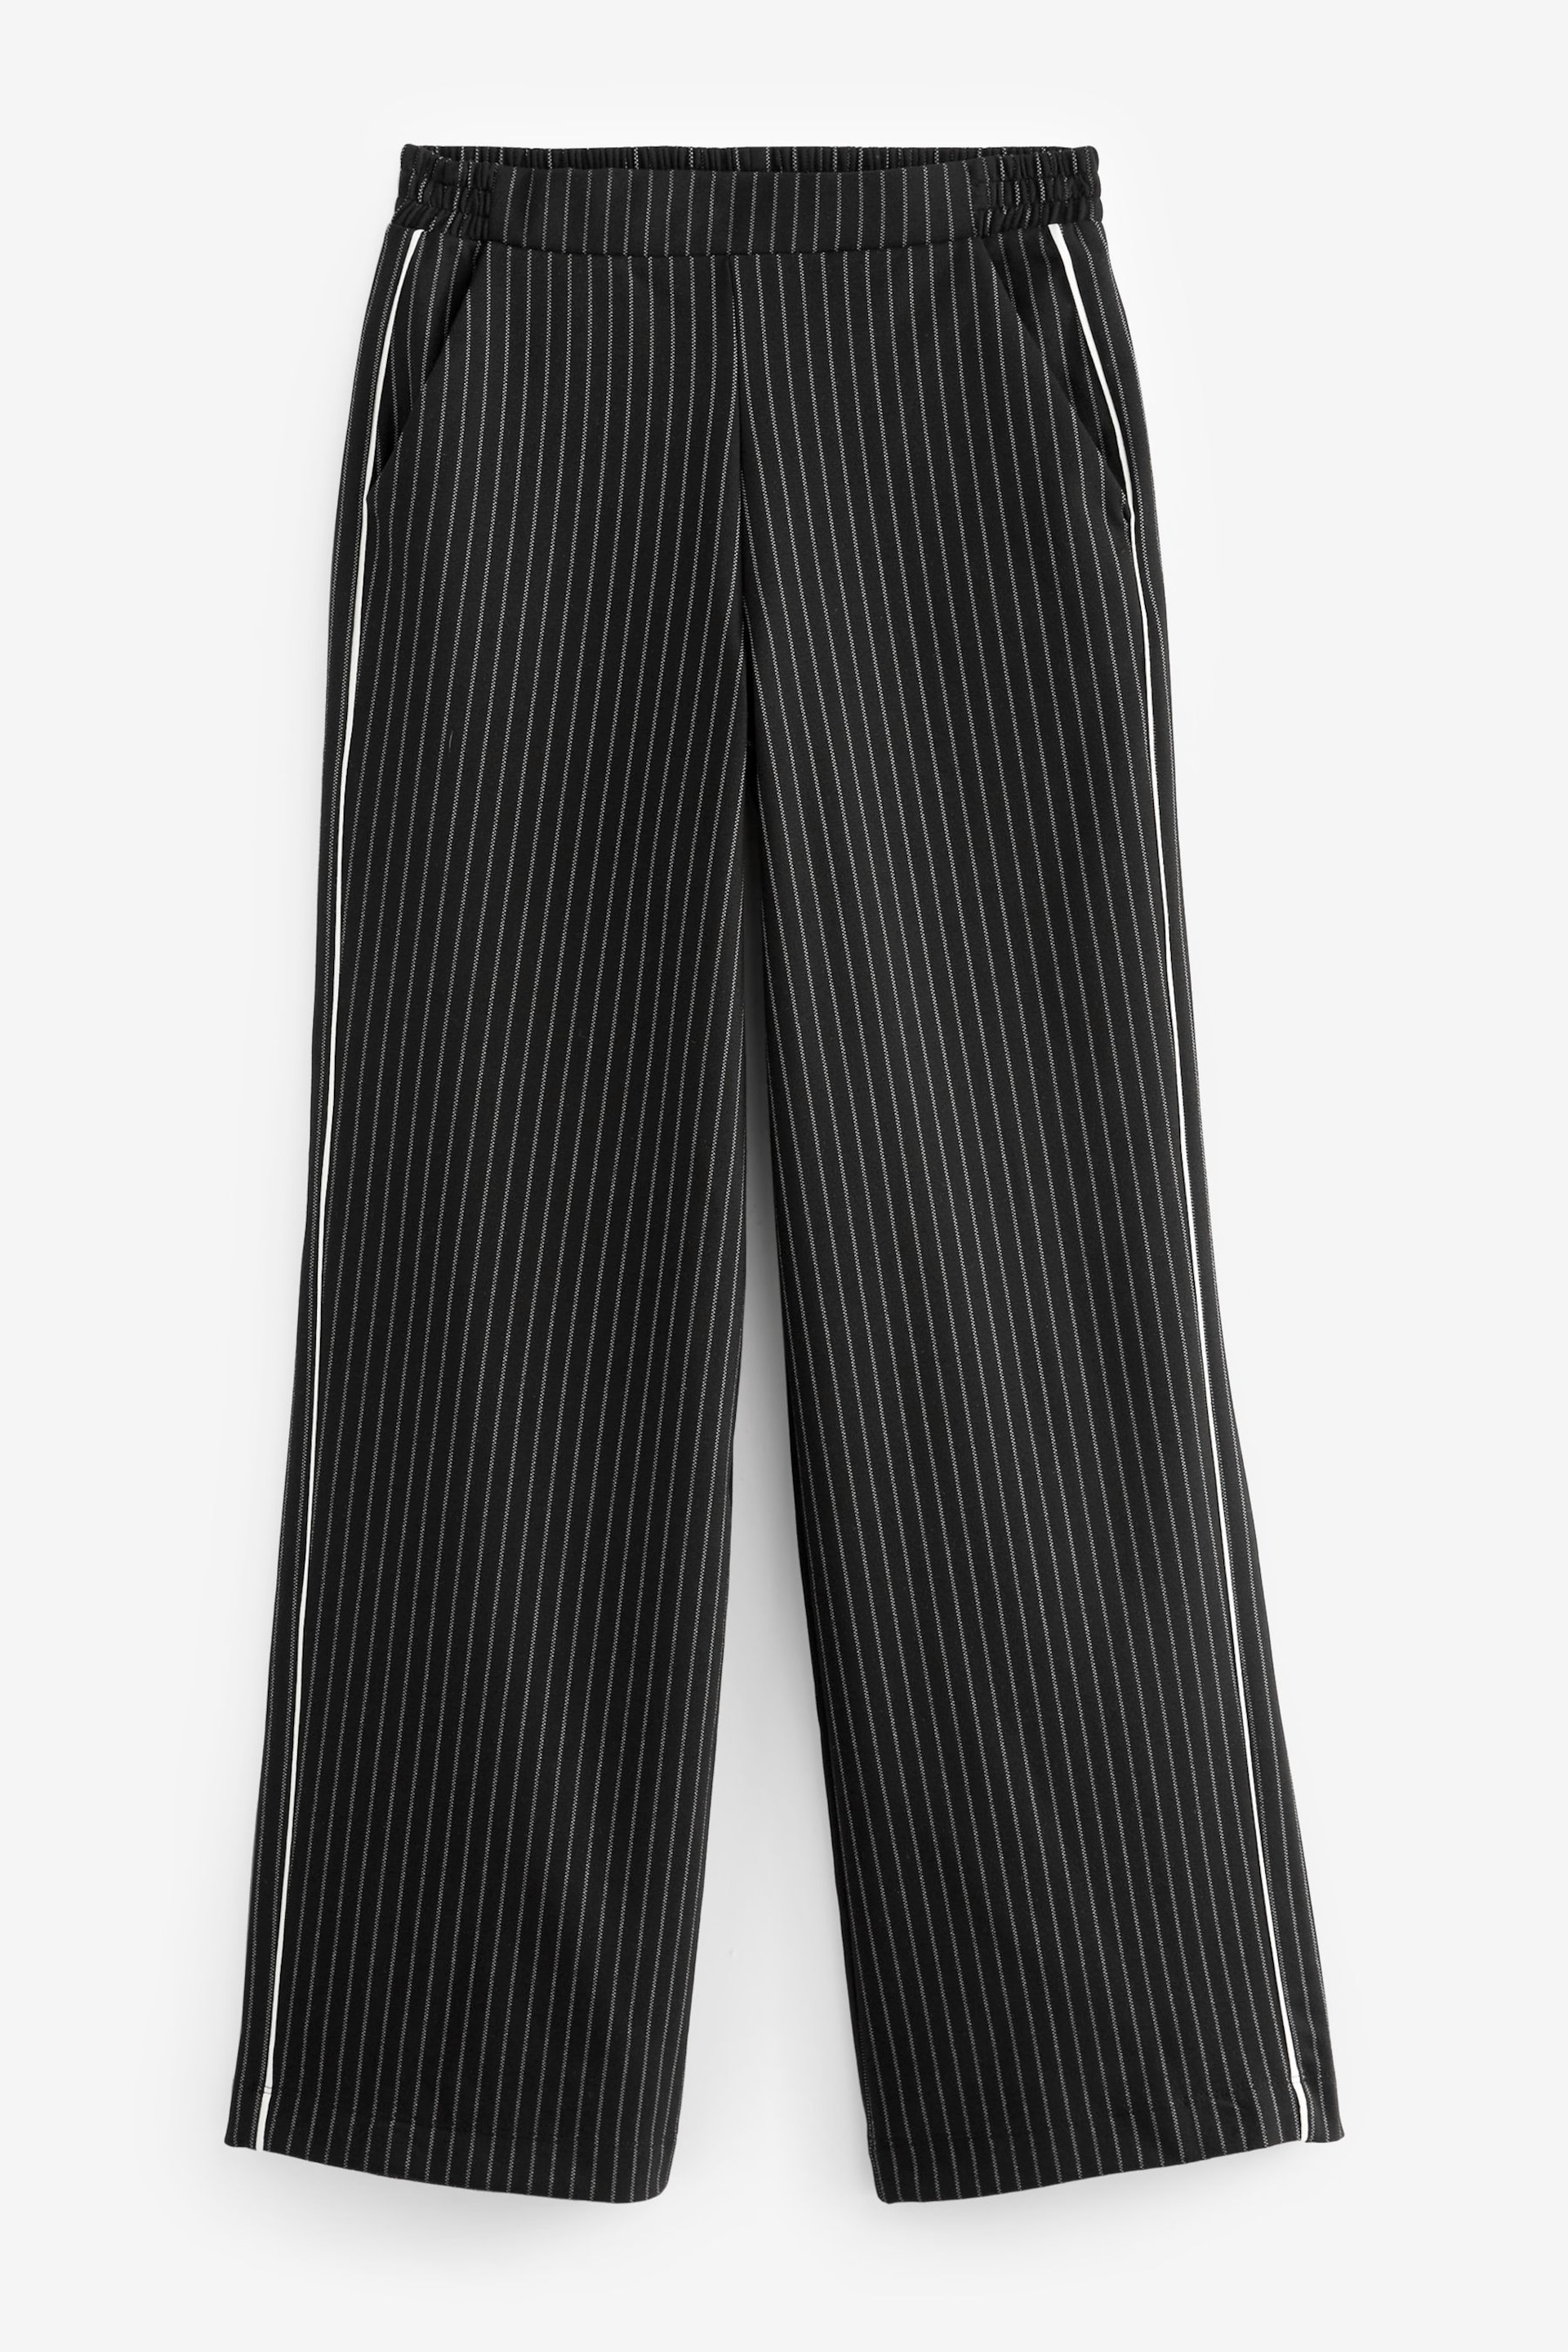 Black Pinstripe Jersey Wide Leg Side Stripe Trousers - Image 4 of 5